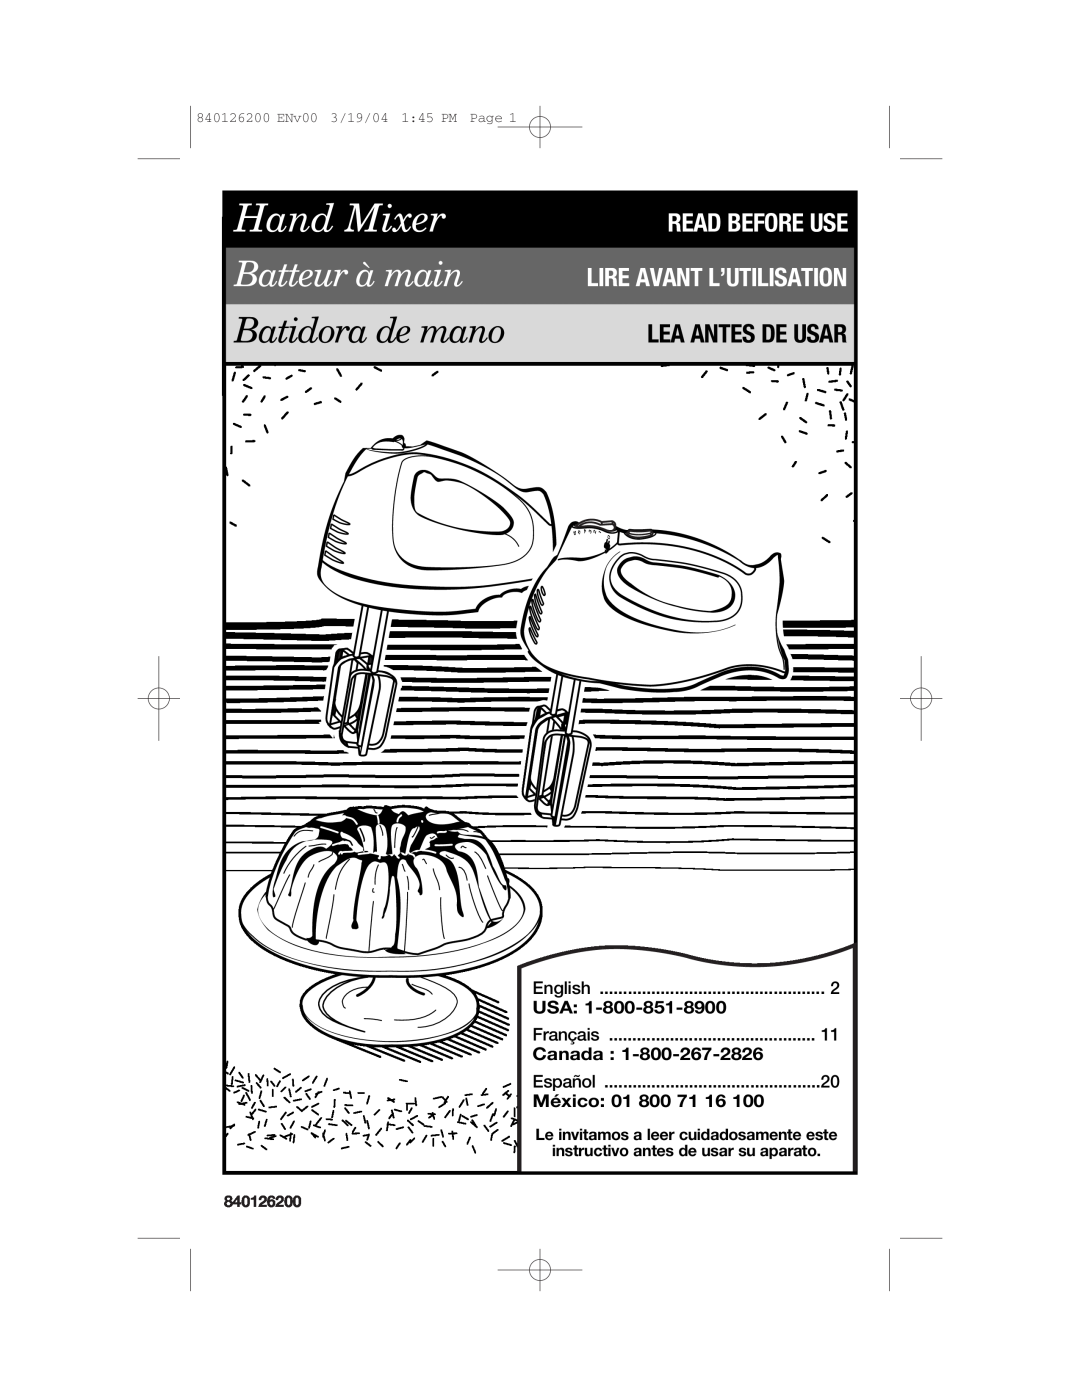 Hamilton Beach 62680C manual Lea Antes De Usar, Canada, México: 01 800 71 16, Hand Mixer, Batteur à main, Batidora de mano 